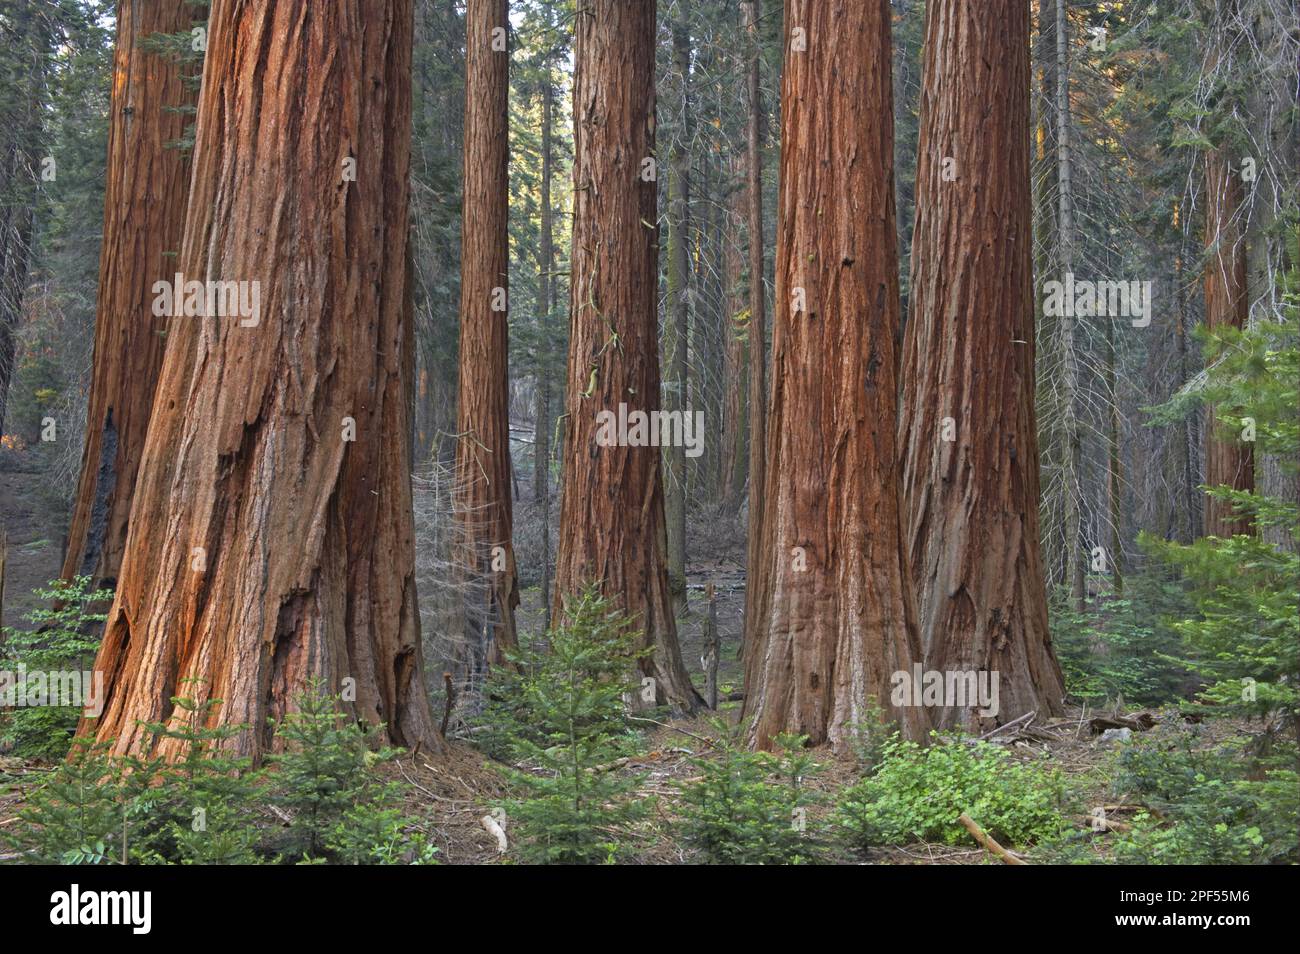 Sequoia gigantea, giant sequoia (Sequoiadendron giganteum), Mountain sequoia, Cypress family, Giant Redwood trunks, in forest habitat, Sequoia N. P. Stock Photo